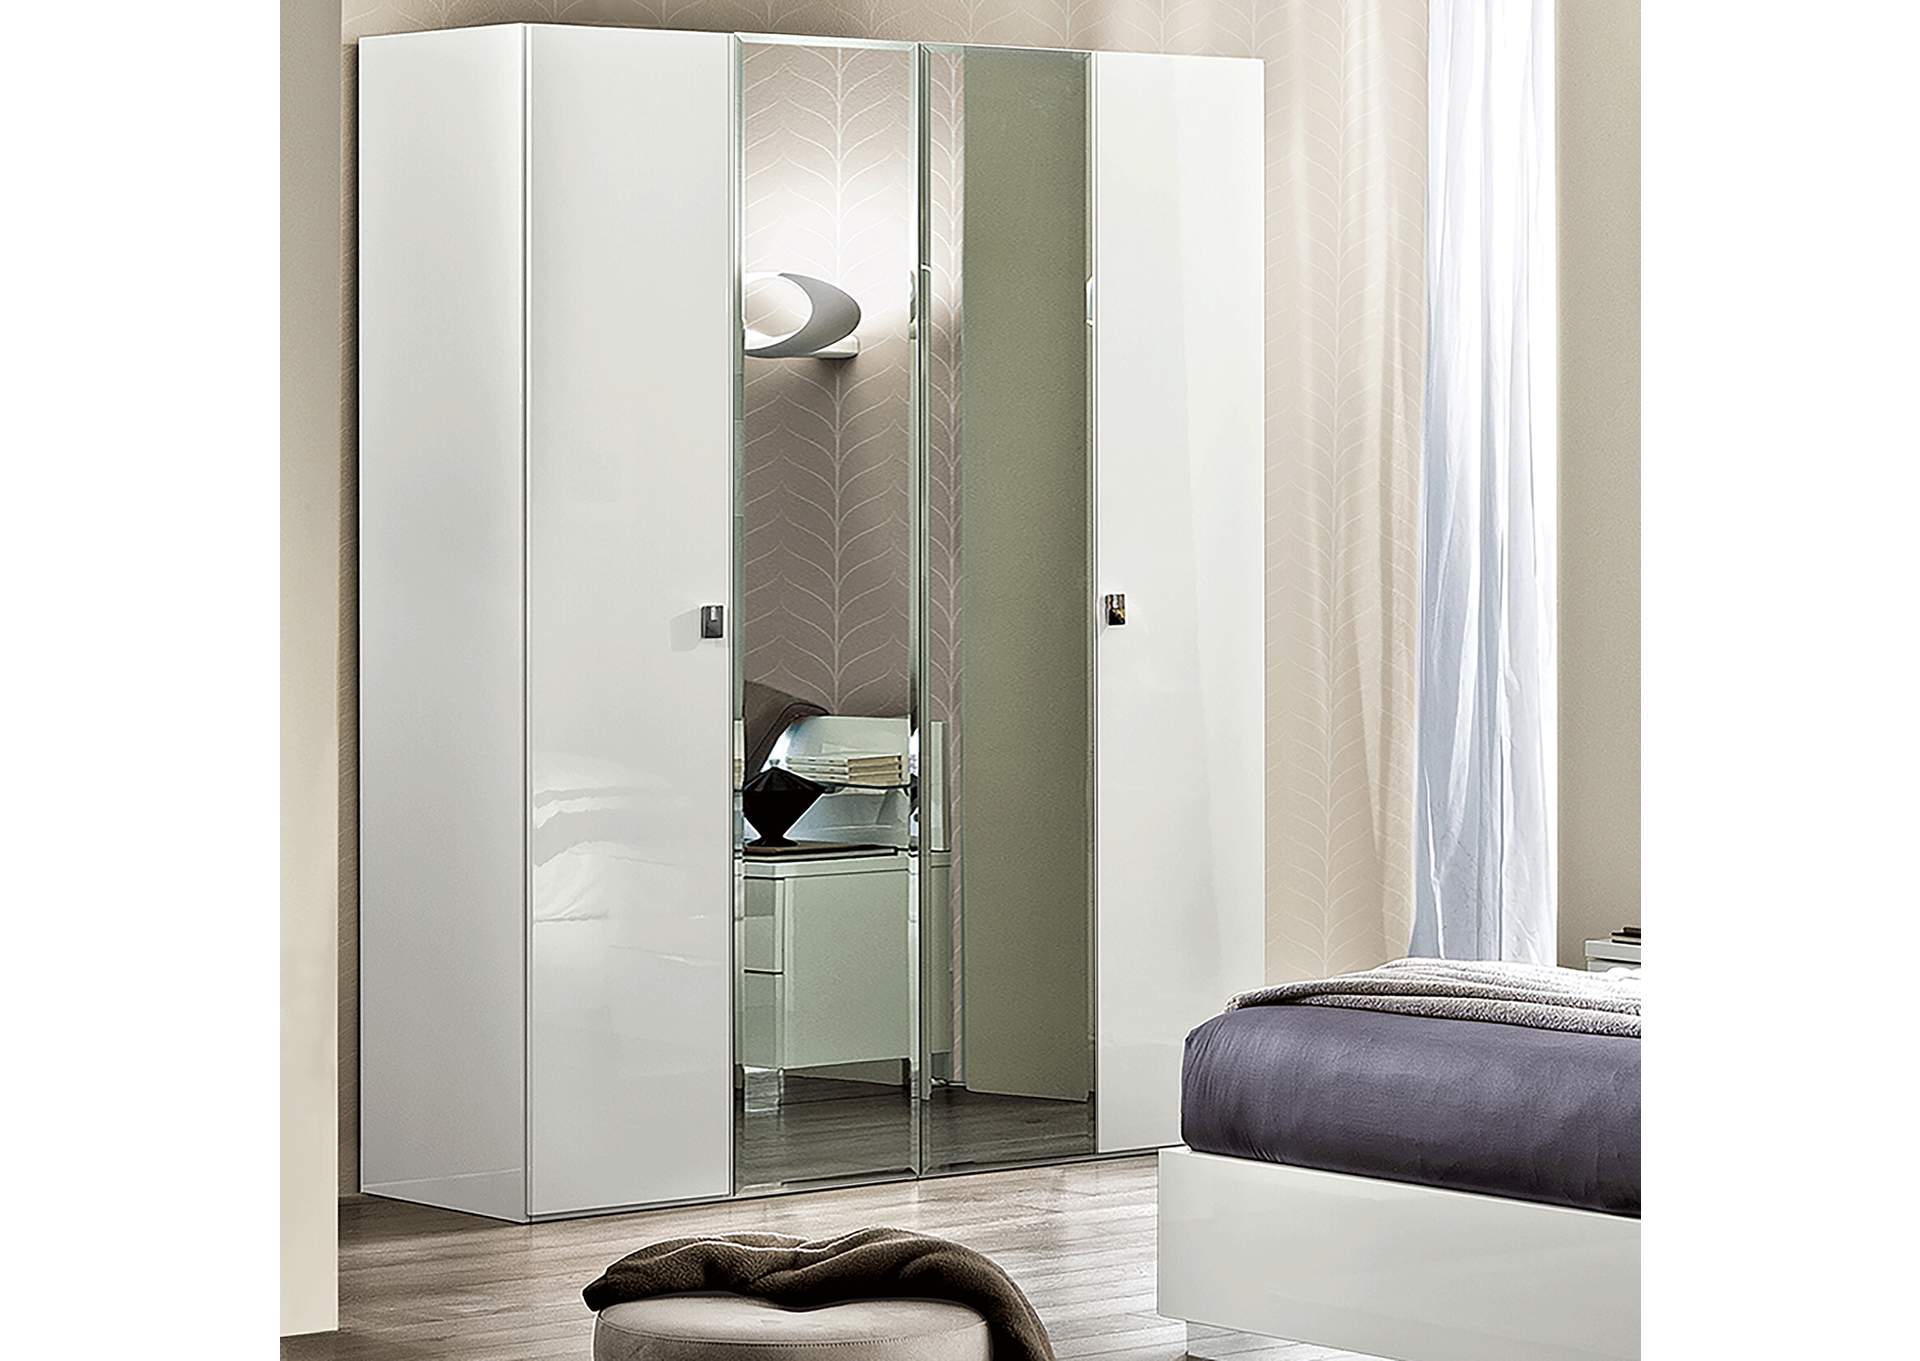 Onda 4 Door Wardrobe with 2 Mirror Doors White,ESF Wholesale Furniture